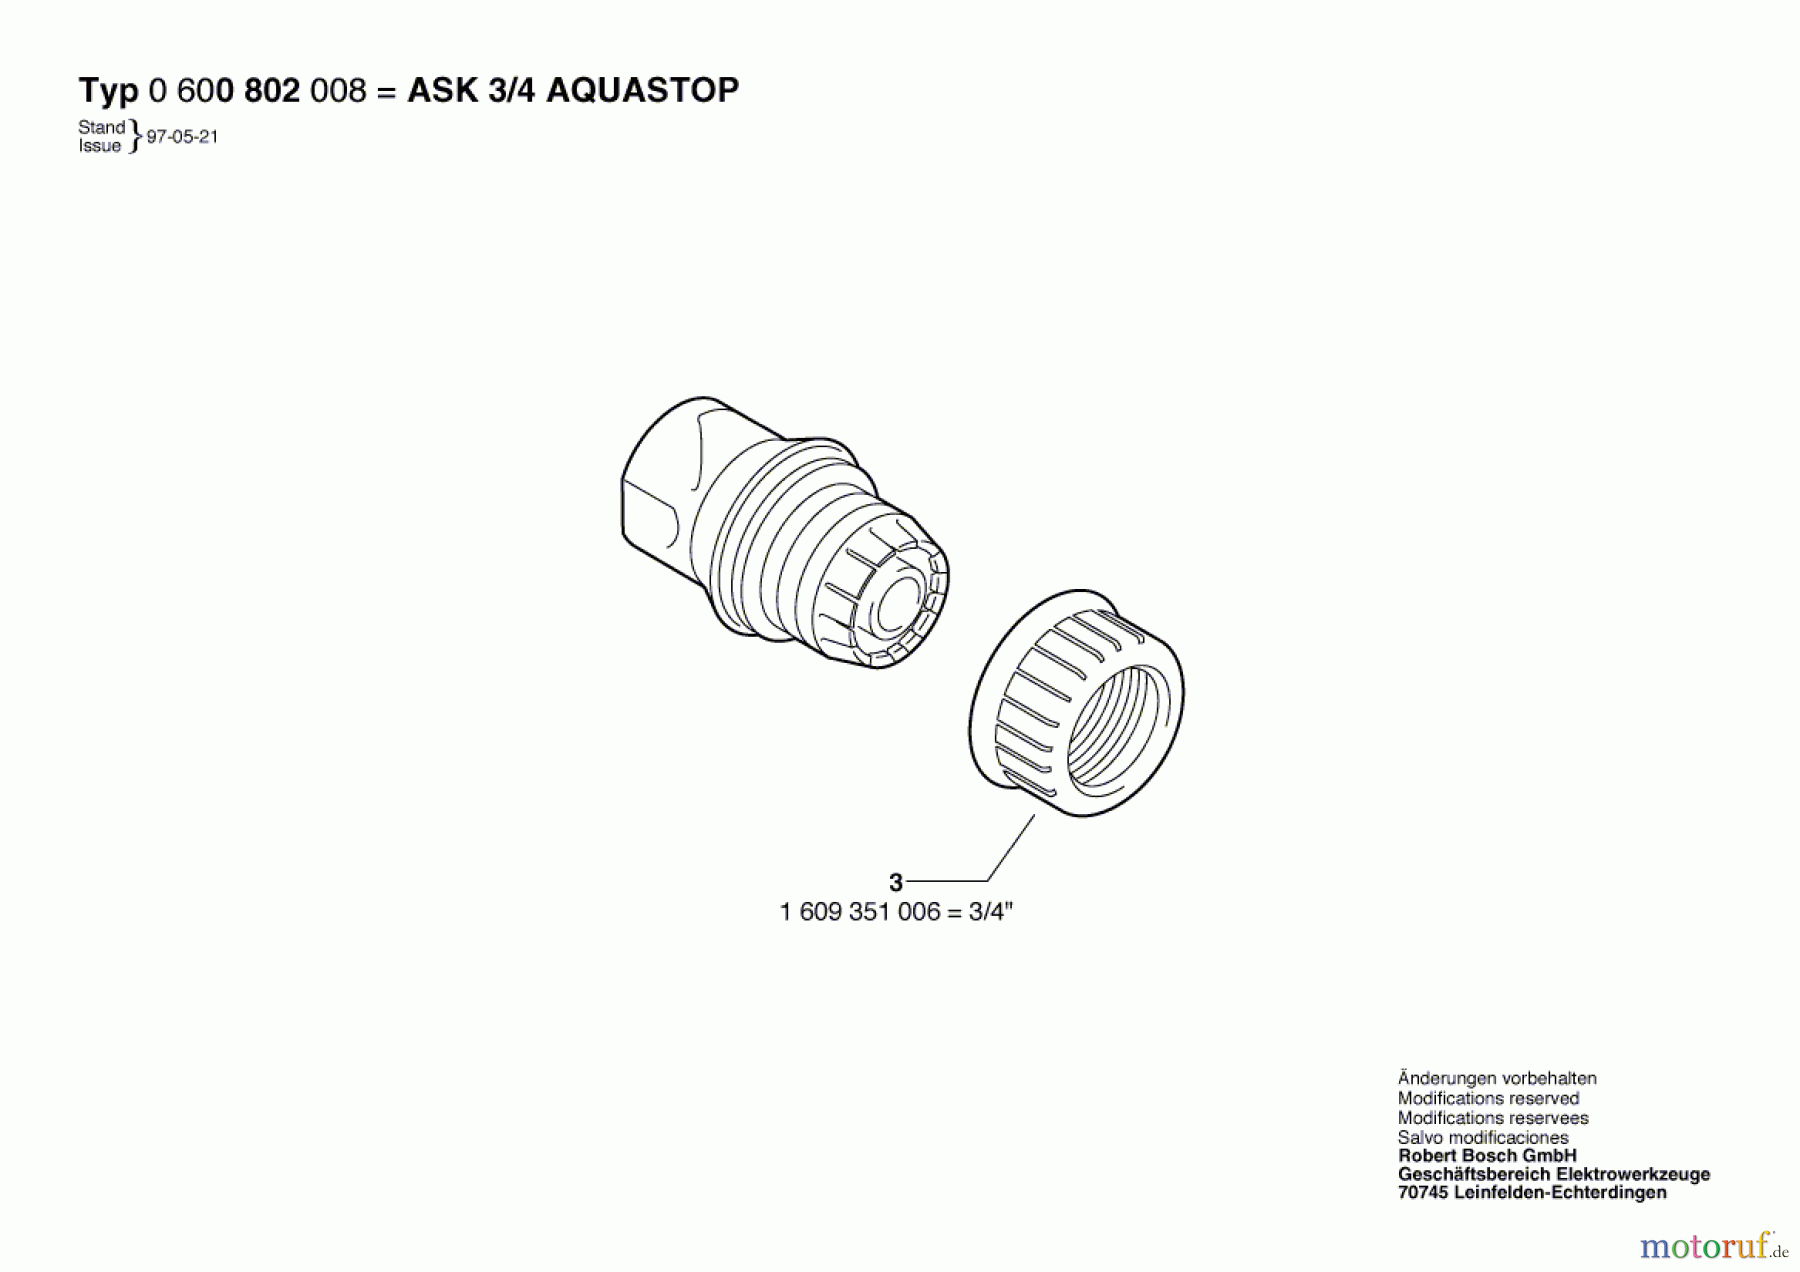  Bosch Wassertechnik Schlauchkupplung ASK 3/4 AQUASTOP Seite 1